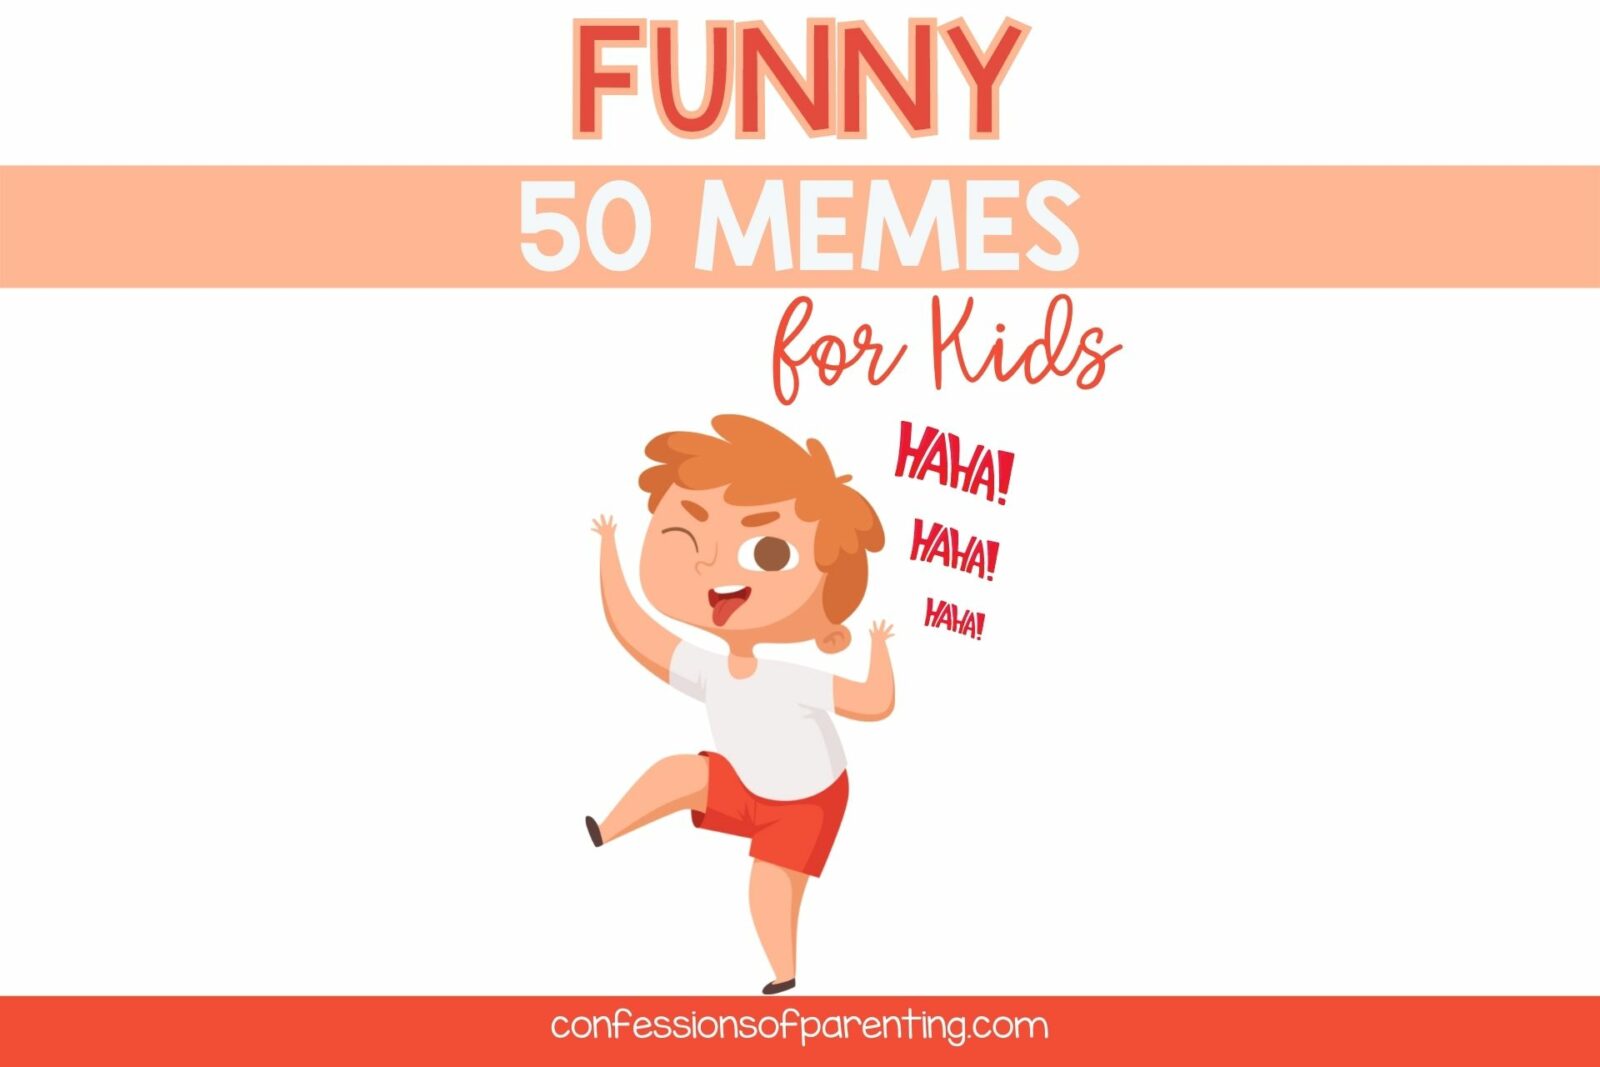 memes for kids